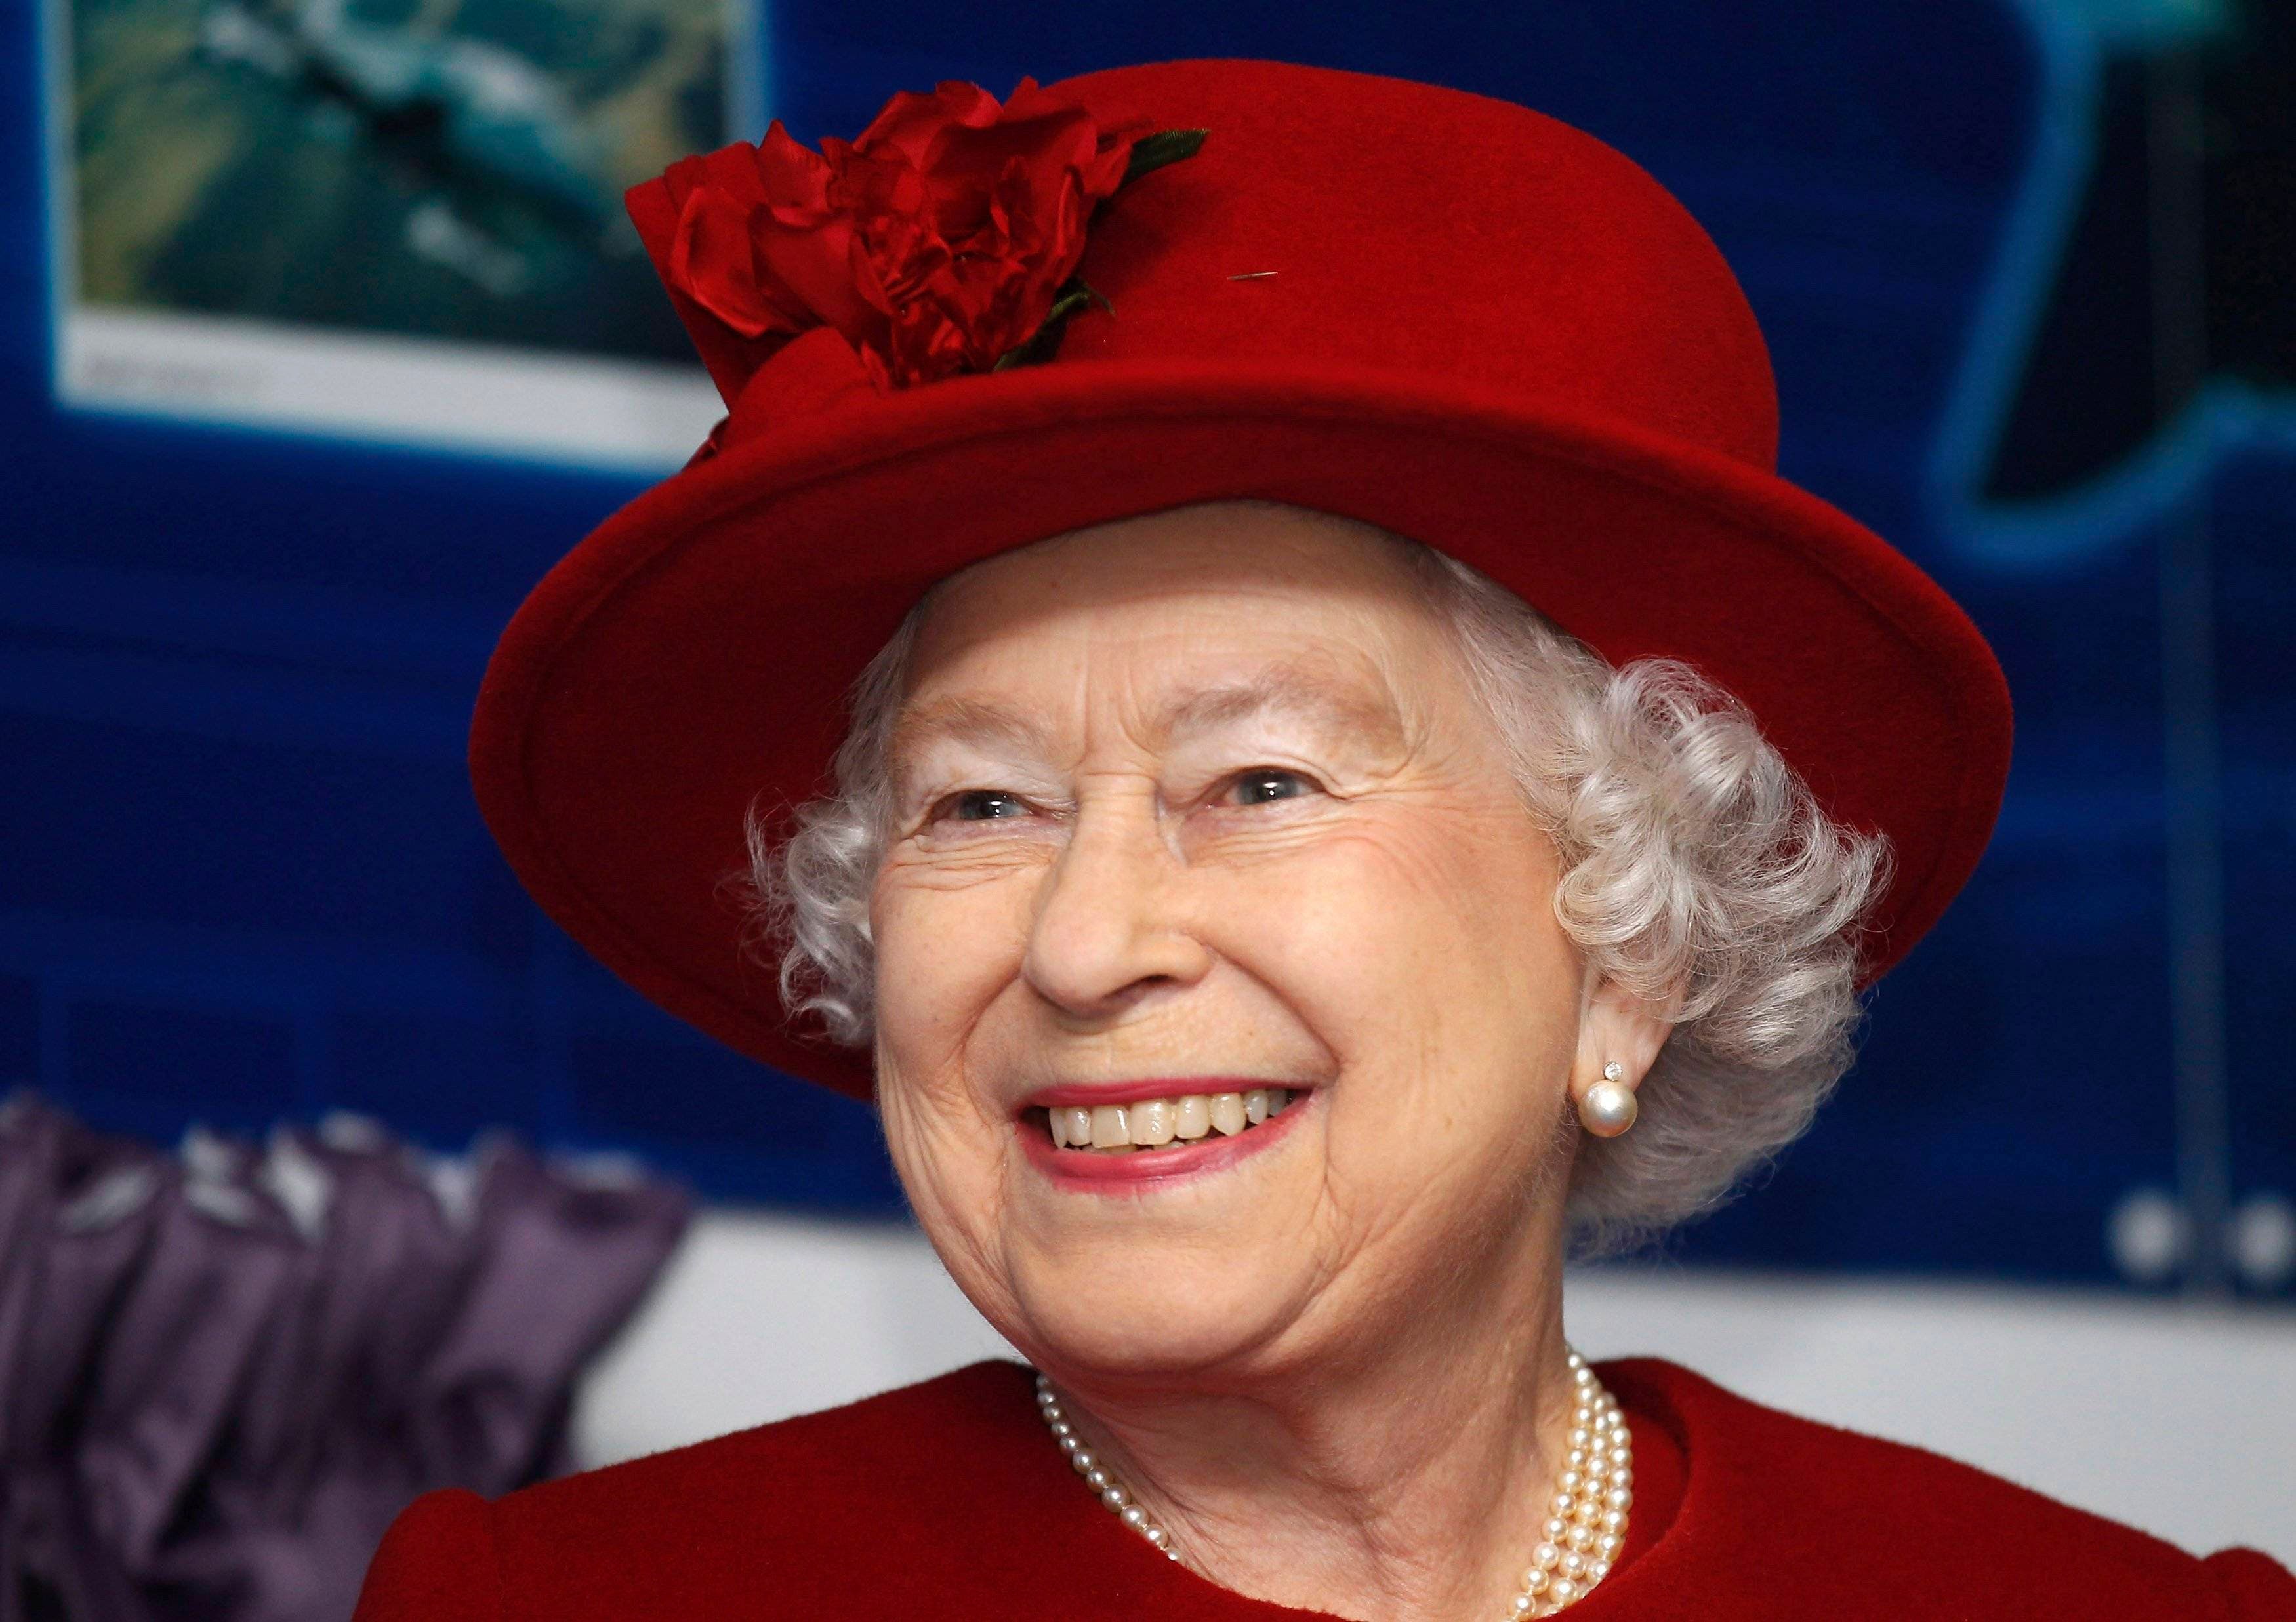 Musicales e himnos, entre las 10 canciones favoritas de la reina Isabel II